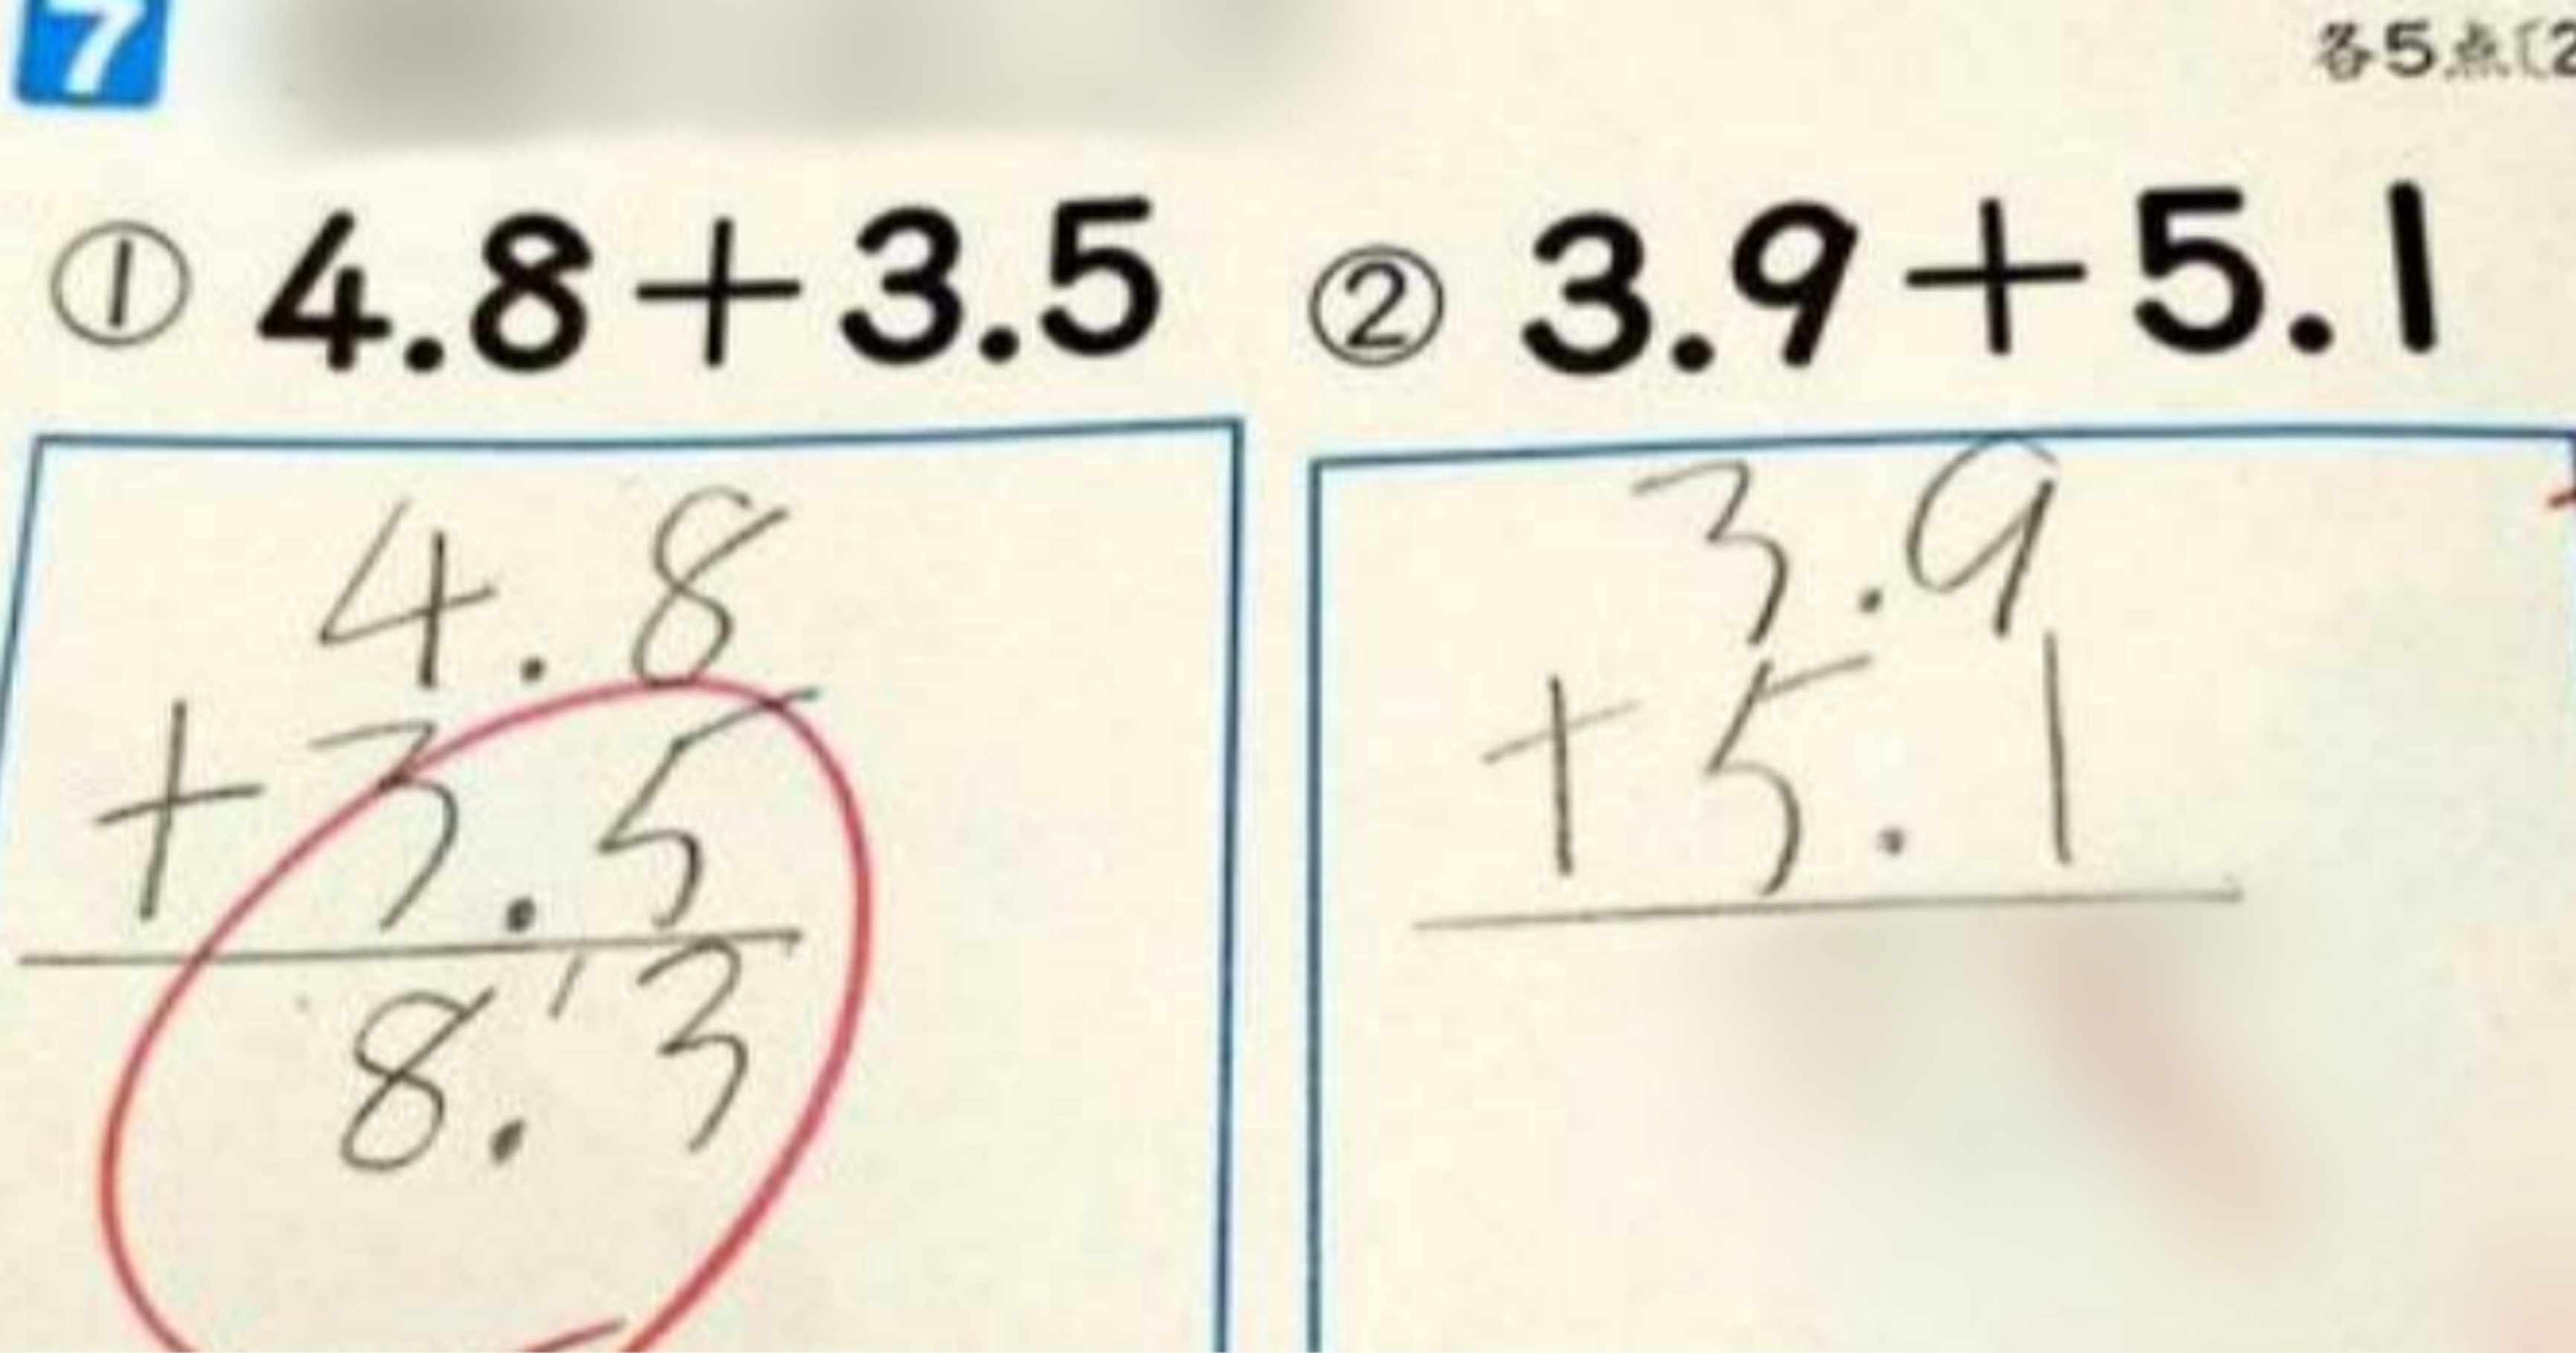 kakaotalk 20211112 010138869.jpg - "이게 왜 틀려?" 오답으로 논란이 있는 초등학교 수학 문제